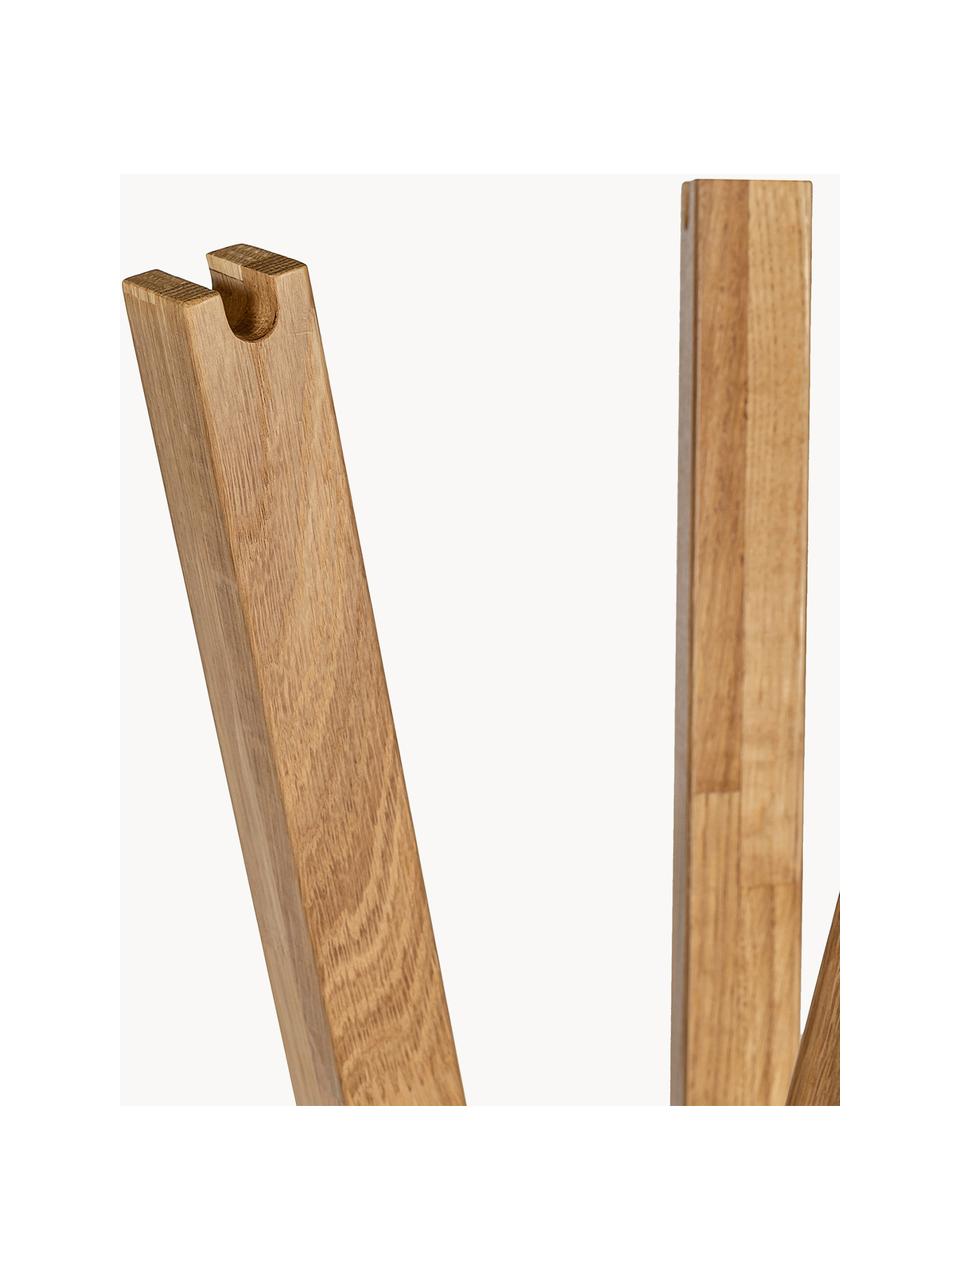 Věšák na oblečení z dubového dřeva Clift, Dubové dřevo

Tento produkt je vyroben z udržitelných zdrojů dřeva s certifikací FSC®., Dubové dřevo, Š 35 cm, V 175 cm